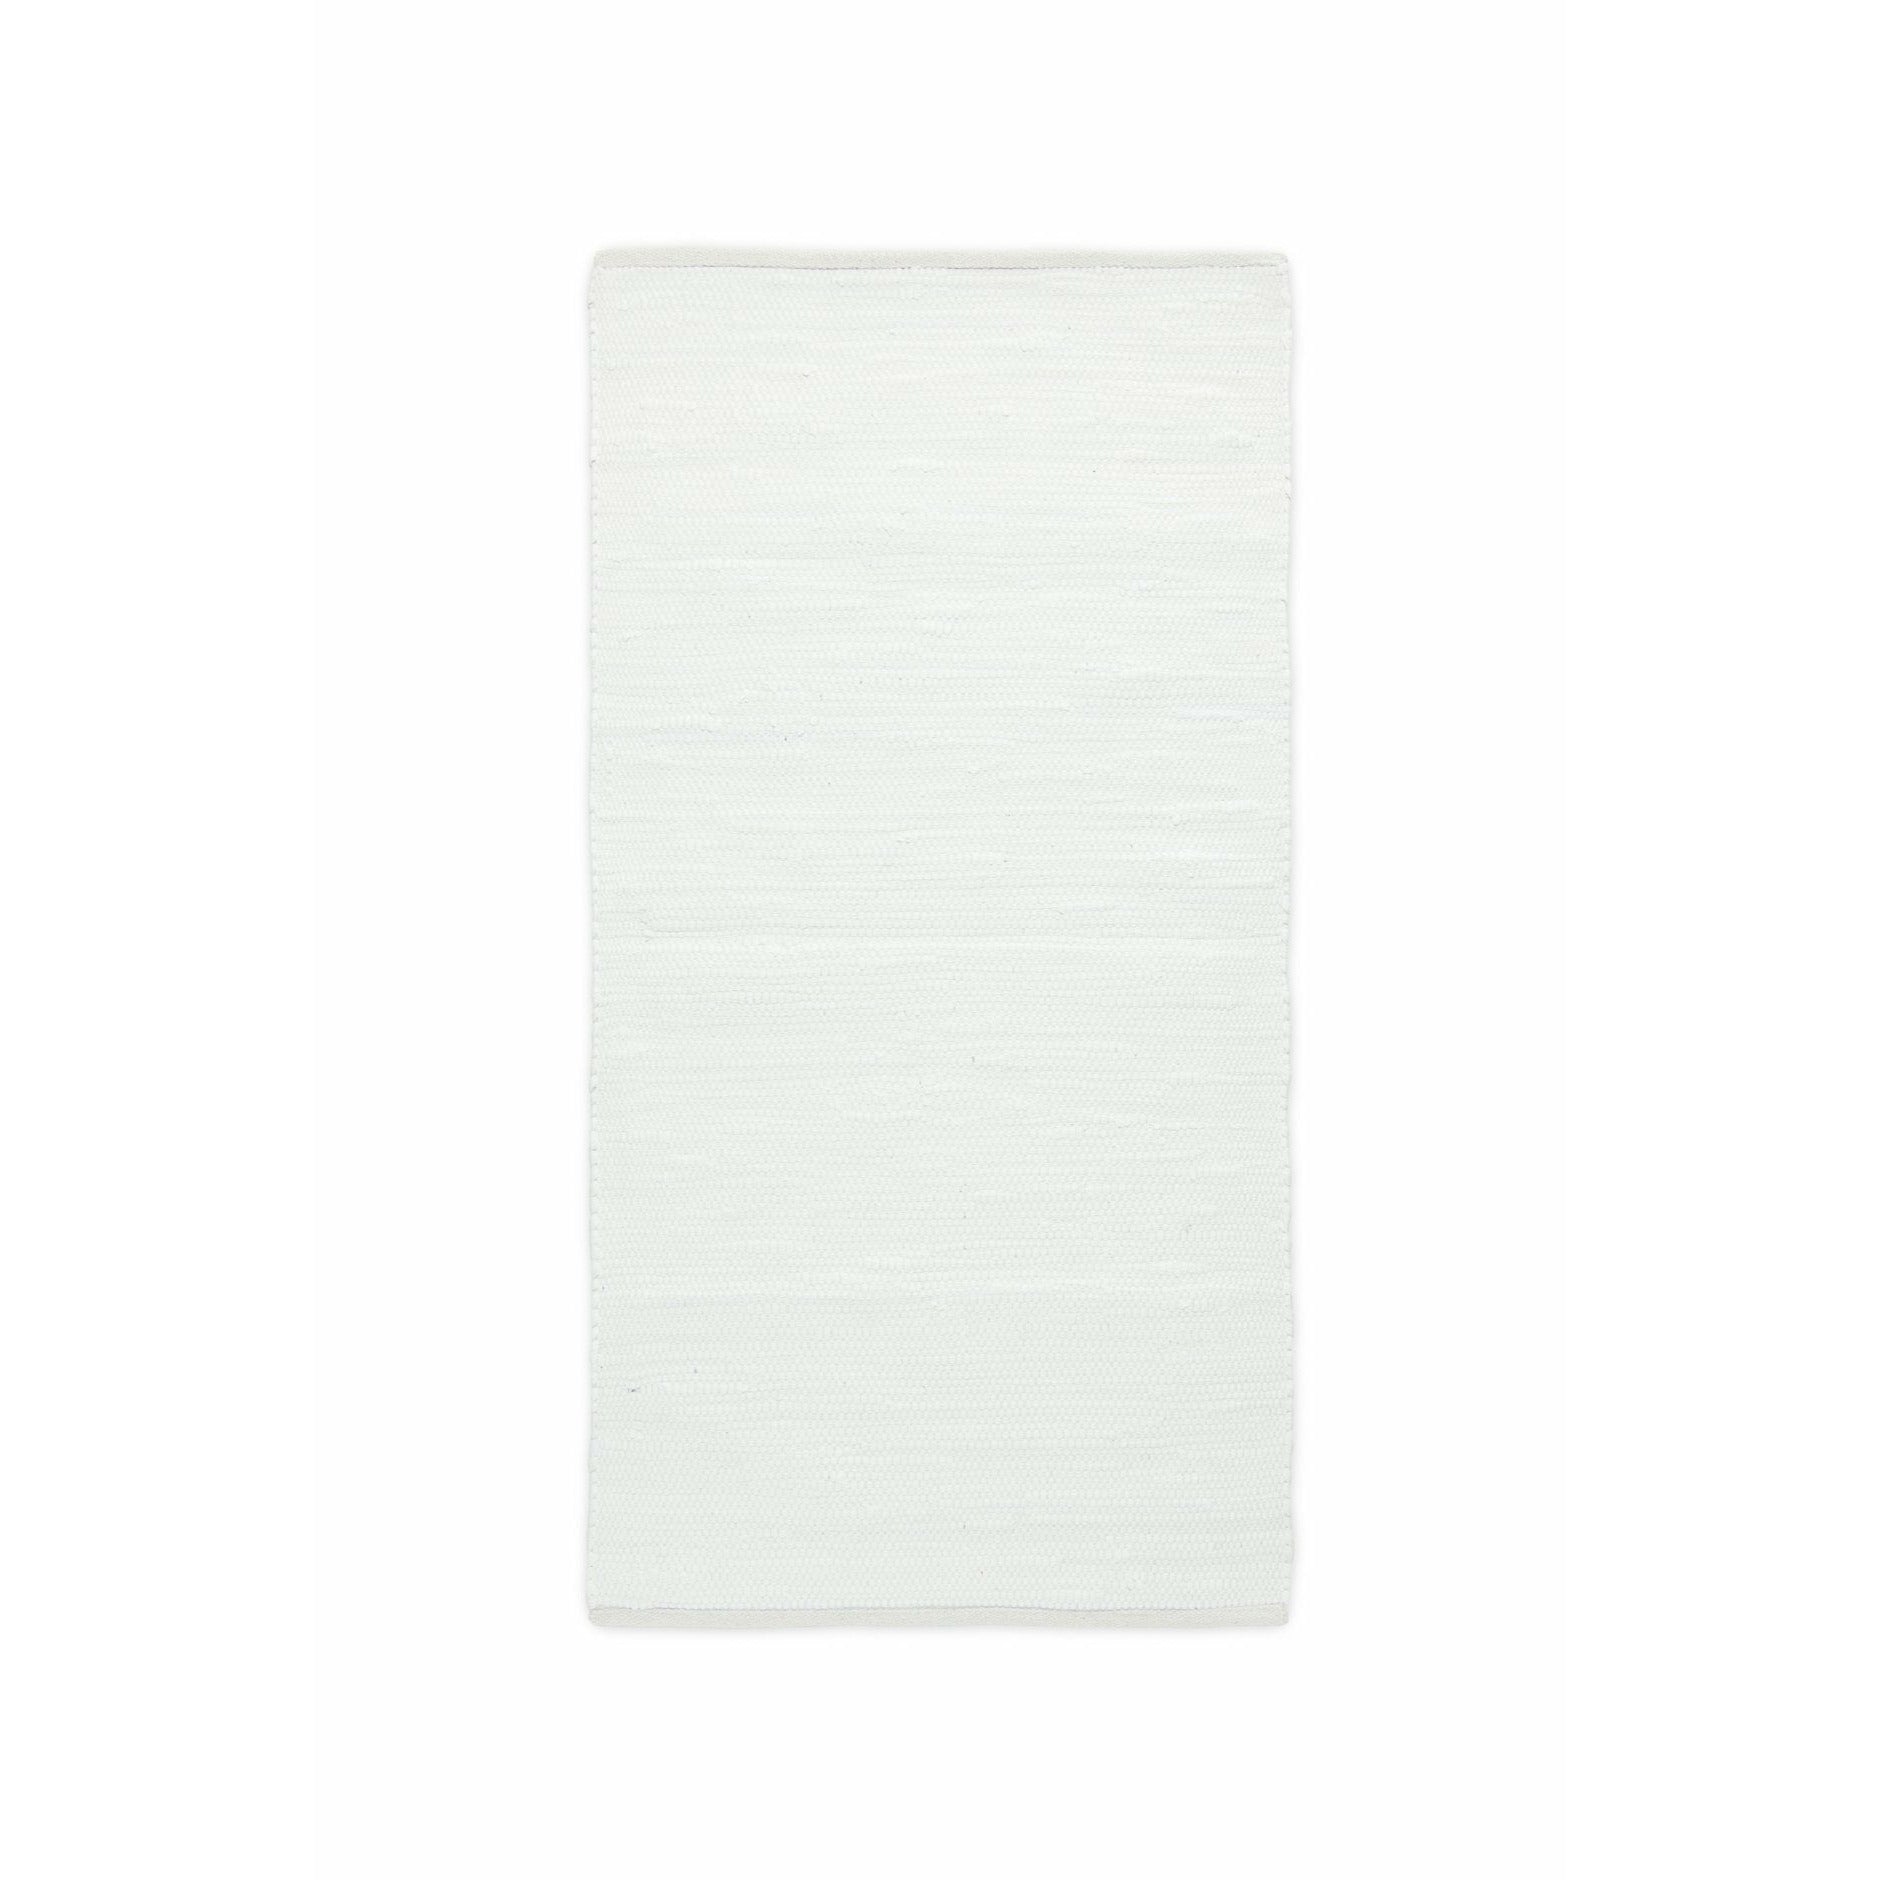 Rug Solid Bomuldstæppe hvid, 65 x 135 cm